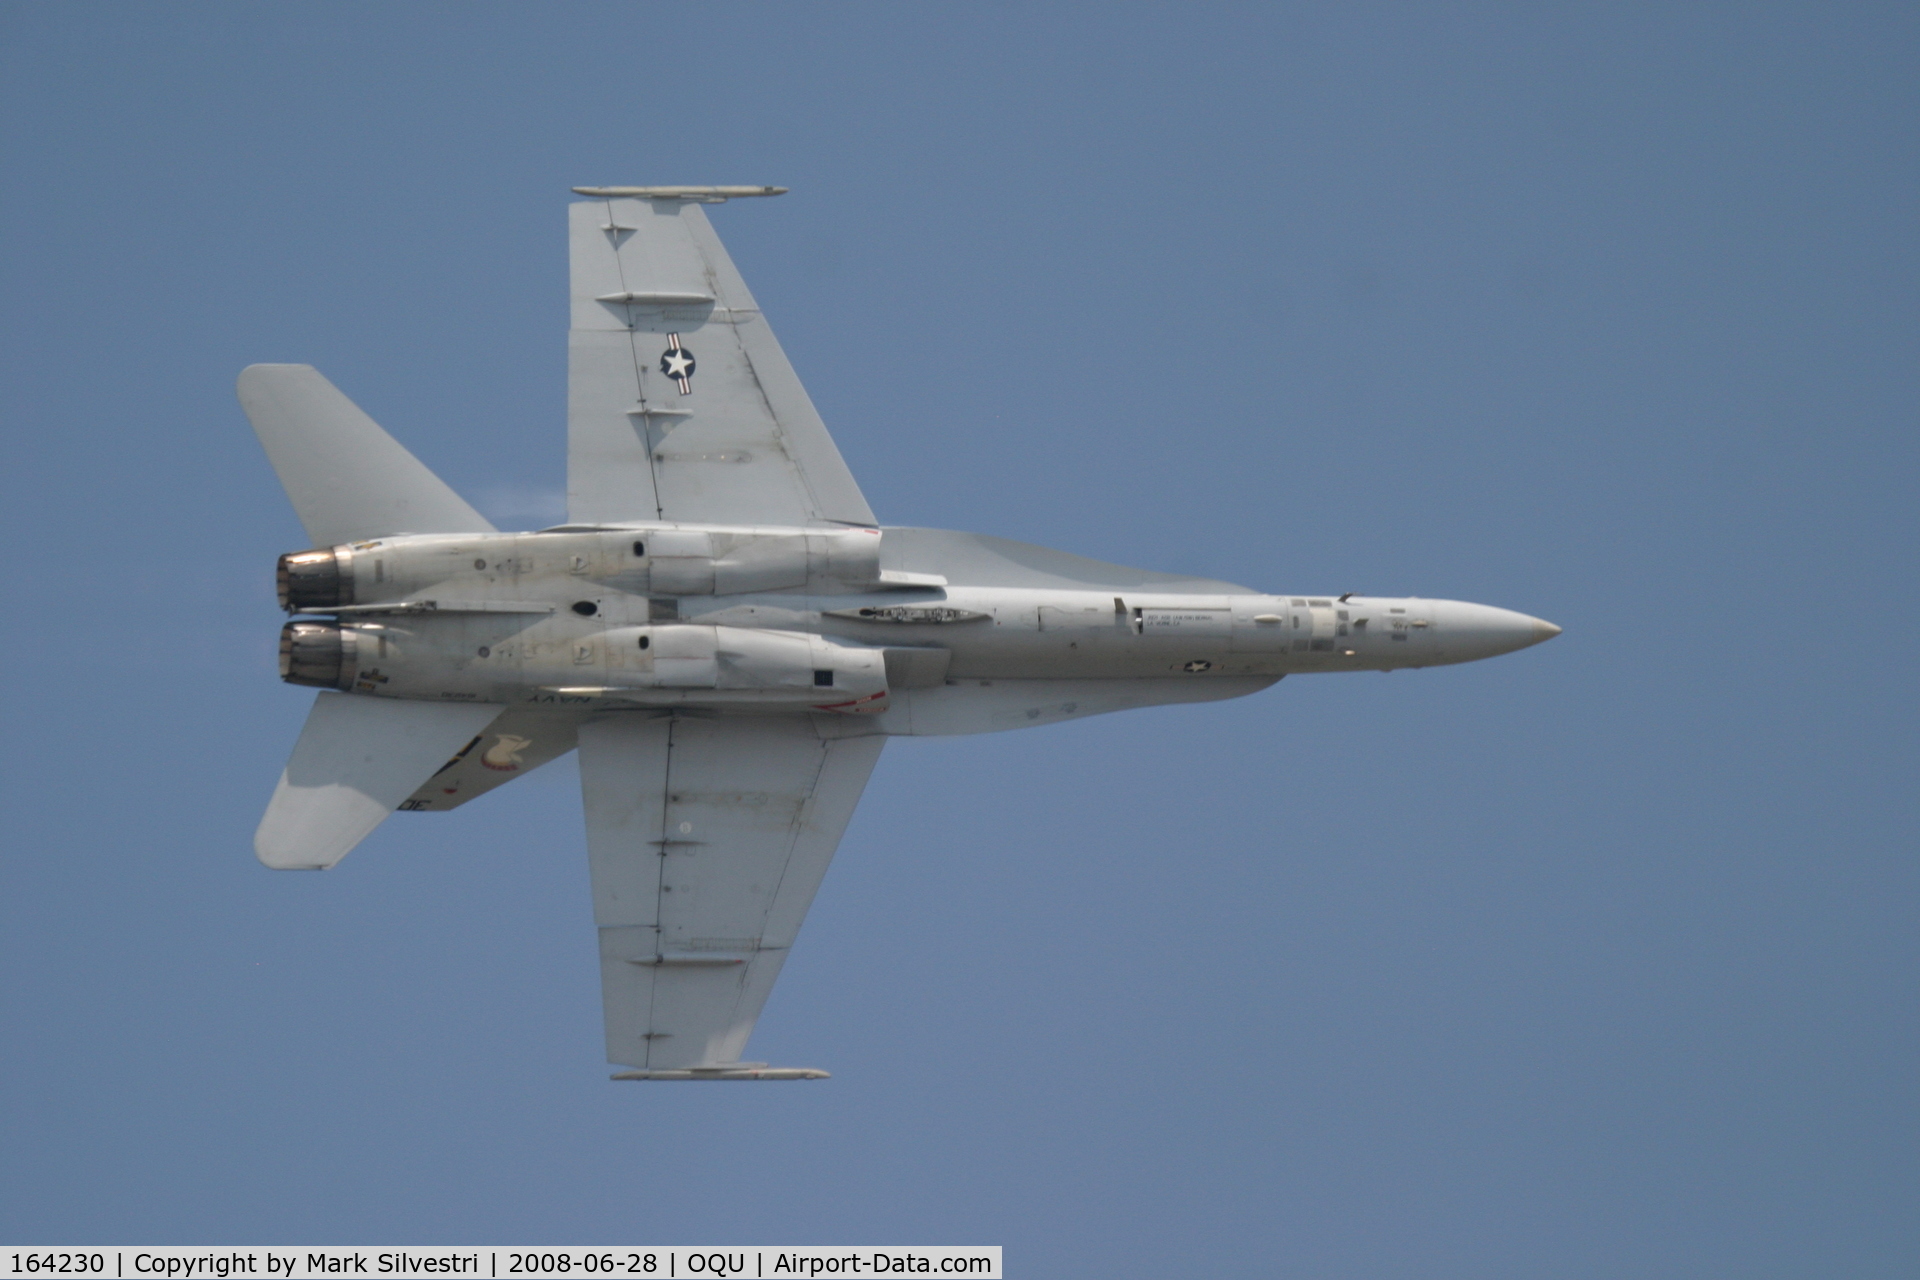 164230, 1991 McDonnell Douglas F/A-18C Hornet C/N 0993/C217, Quonset Point 2008 - F-18